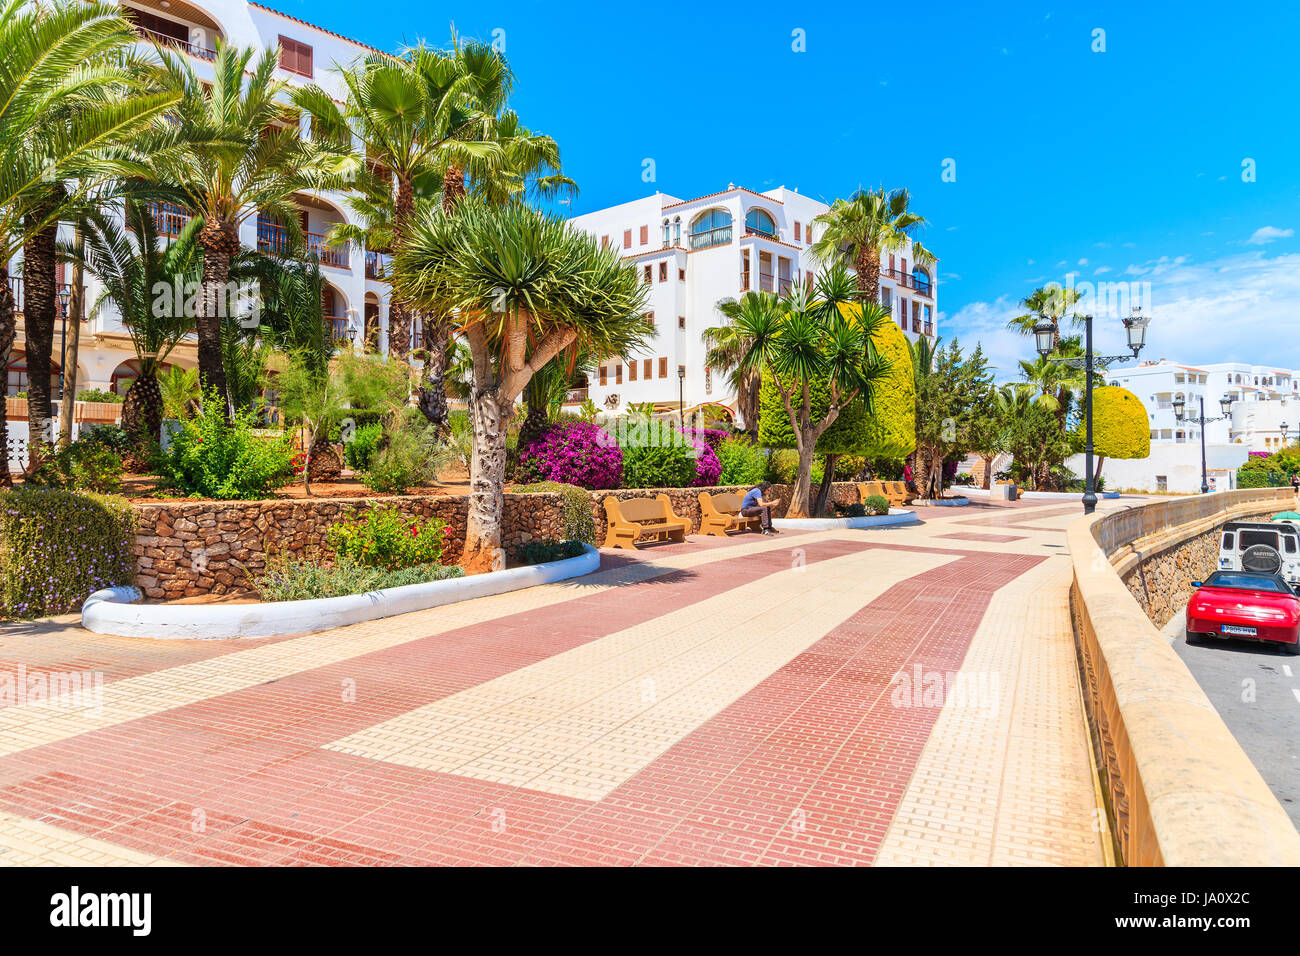 Promenade und Ferienwohnungen im traditionellen spanischen Kolonialstil in der Stadt Santa Eularia, Insel Ibiza, Spanien Stockfoto